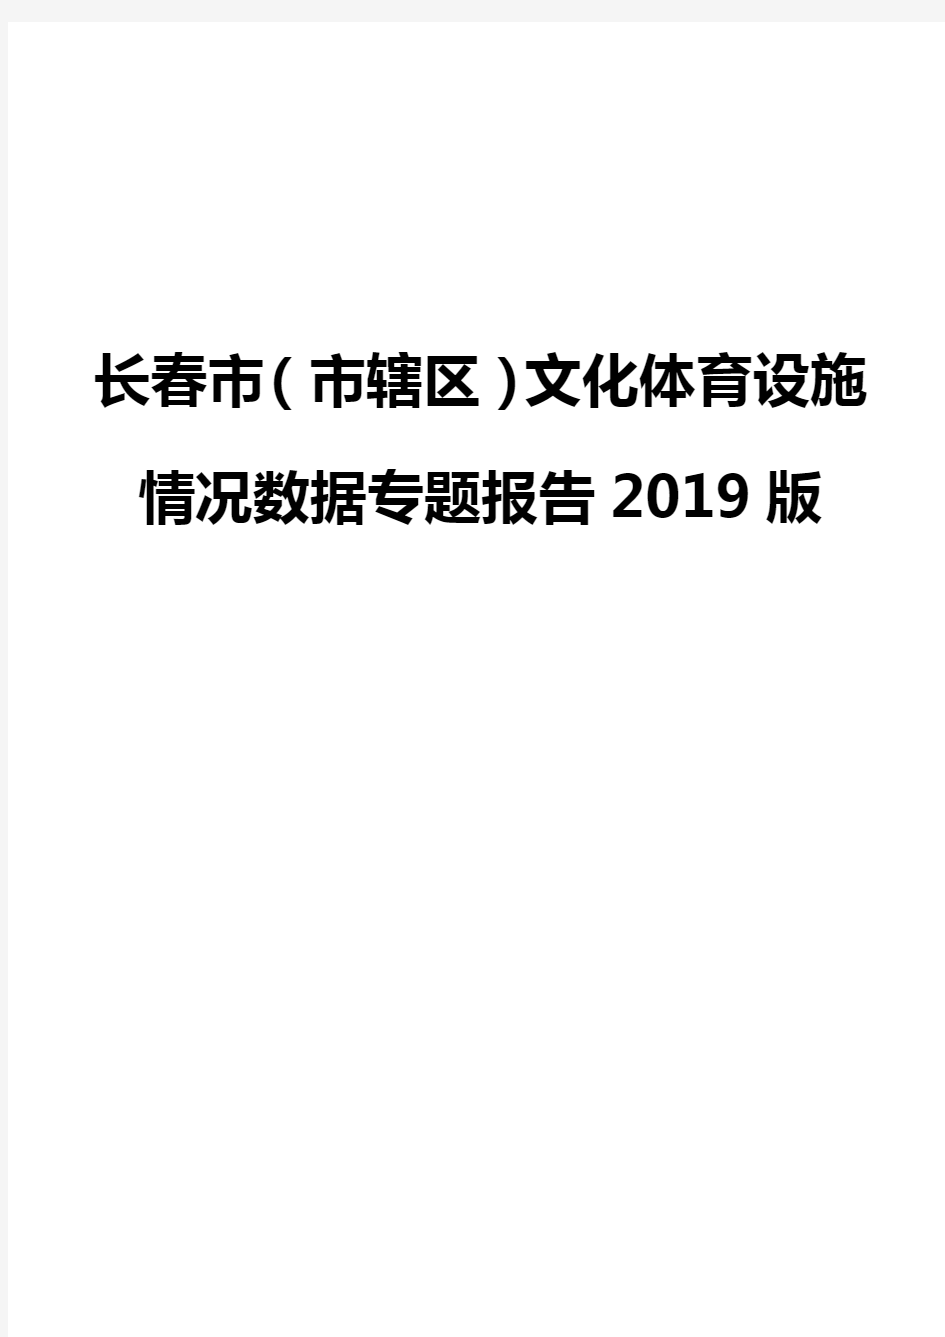 长春市(市辖区)文化体育设施情况数据专题报告2019版